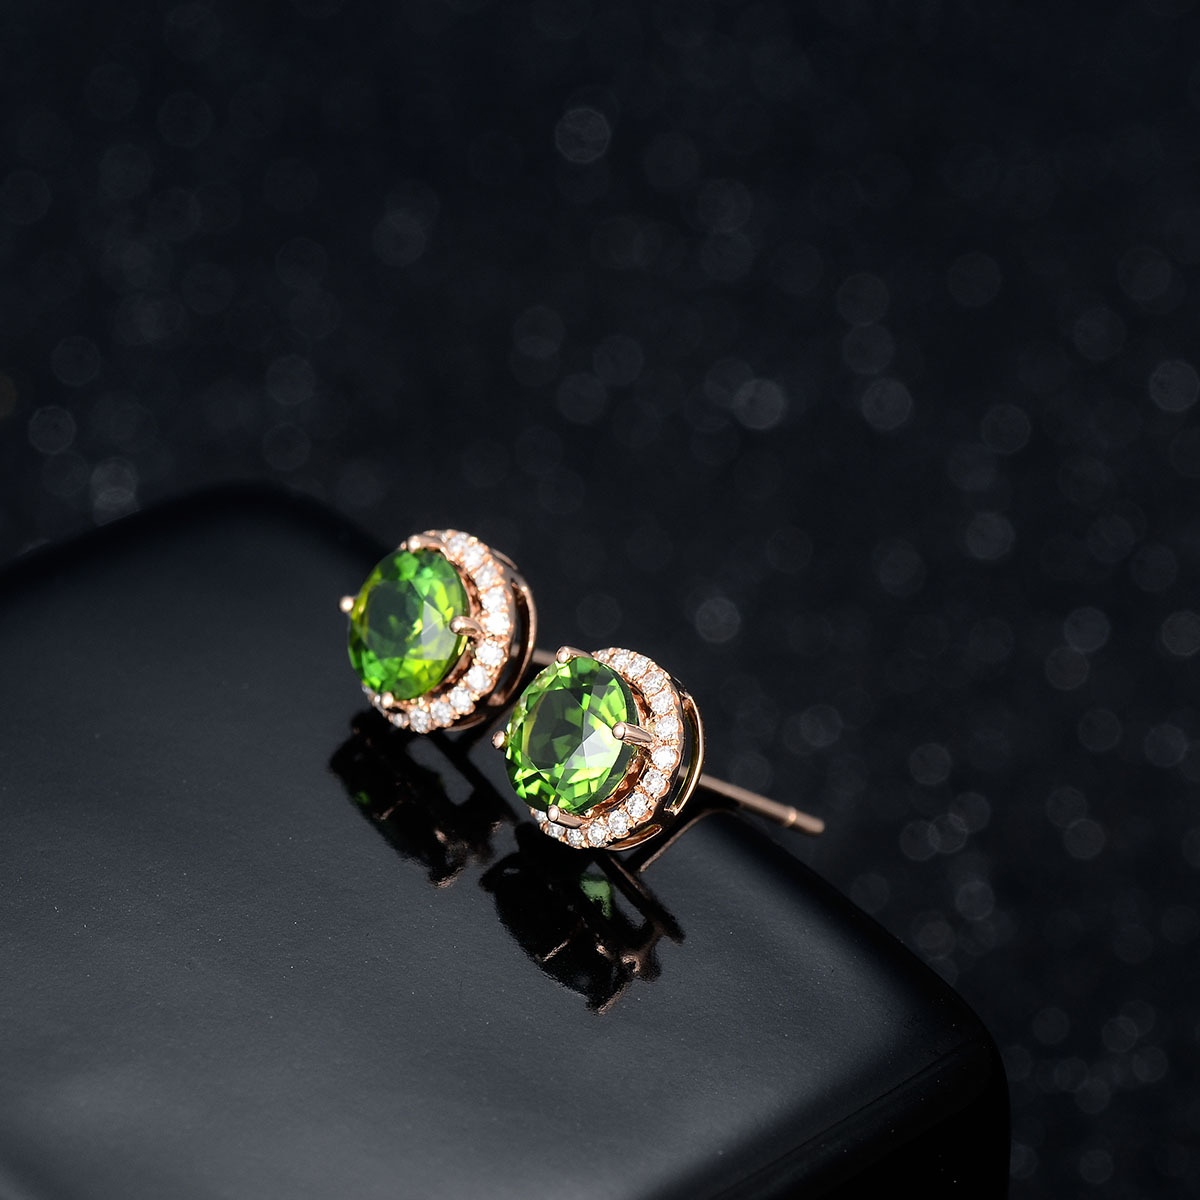 Kvinnliga smyckenörhängen Studs Green Crystal Zircon Diamond Rose Gold Plated Earrings Studs Student Birthday Present